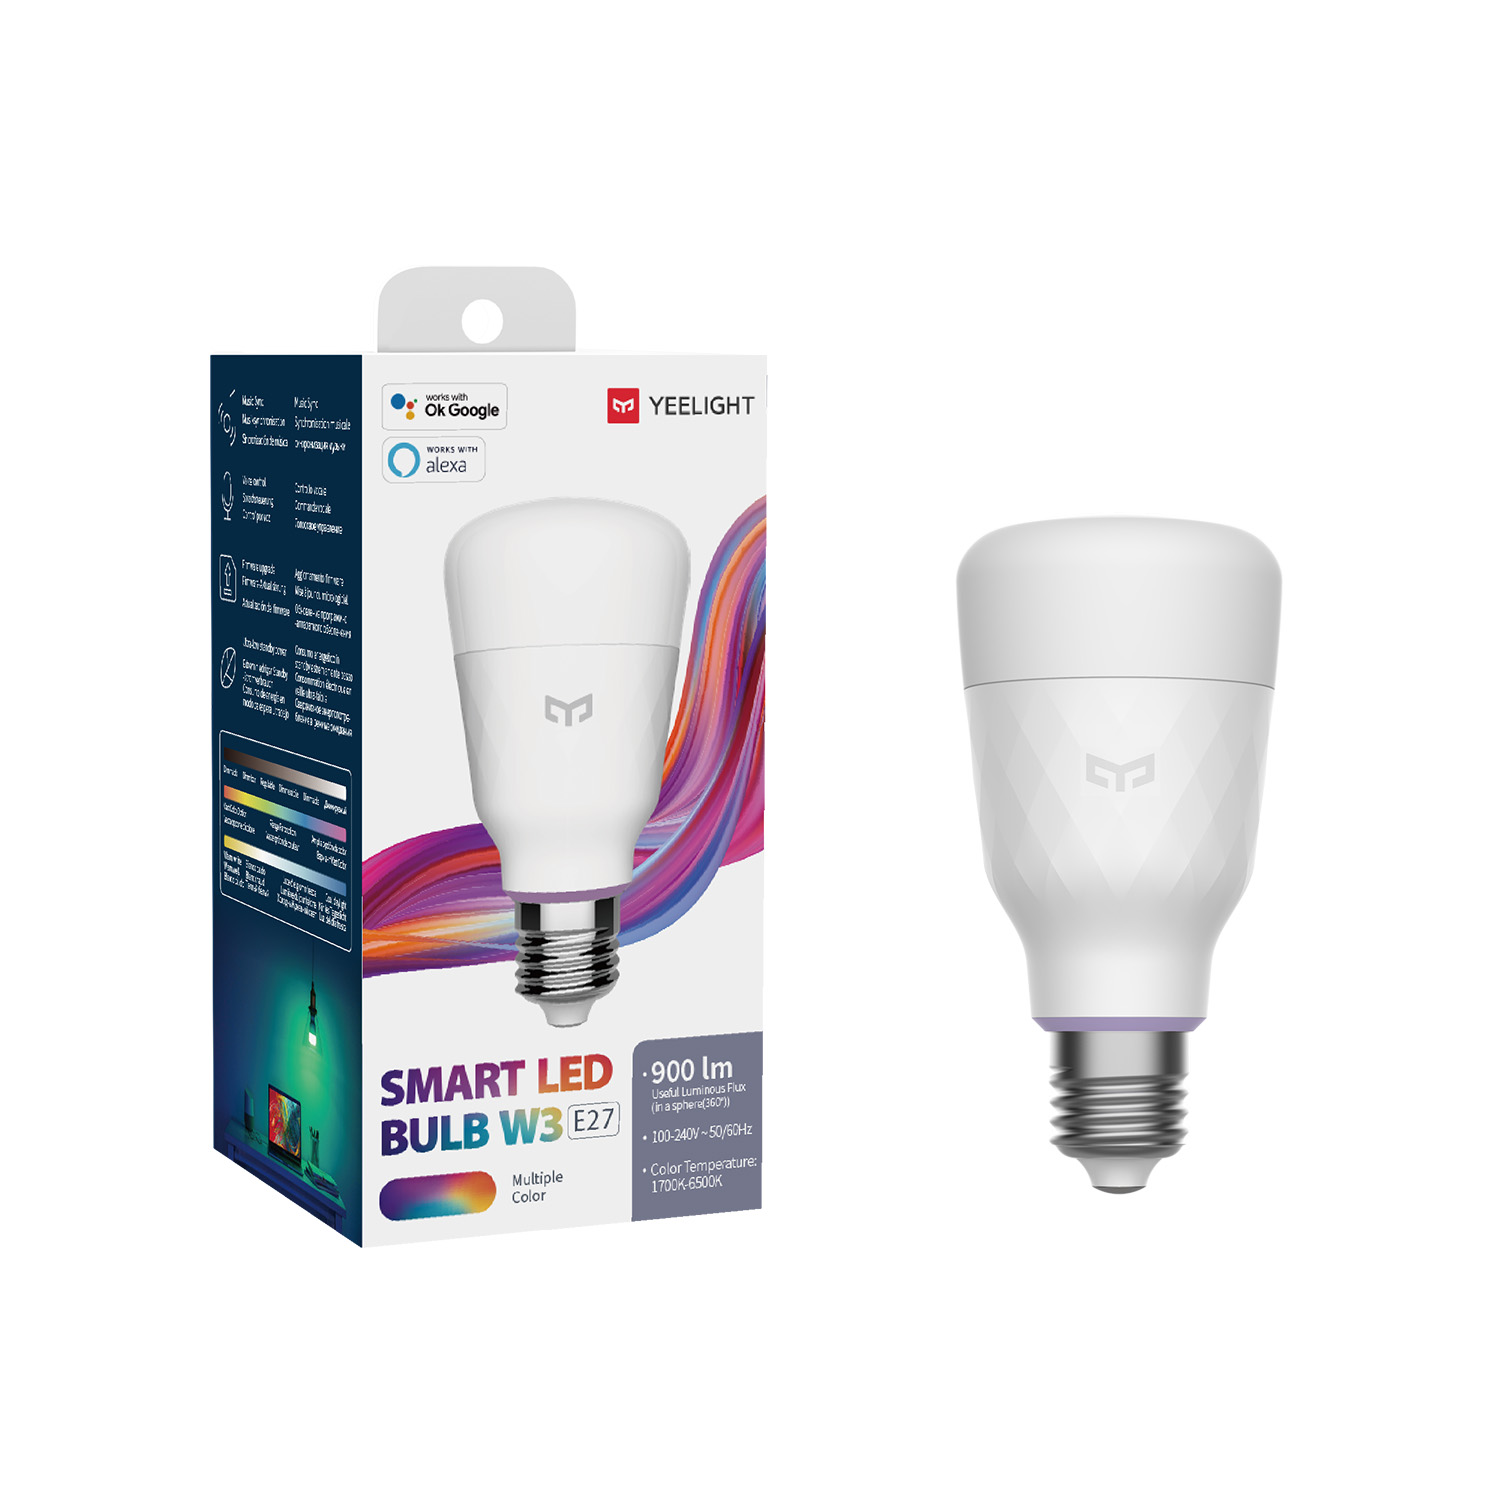 YEELIGHT LED Smart Bulb W3 Mehrfarbig, E27, Wifi